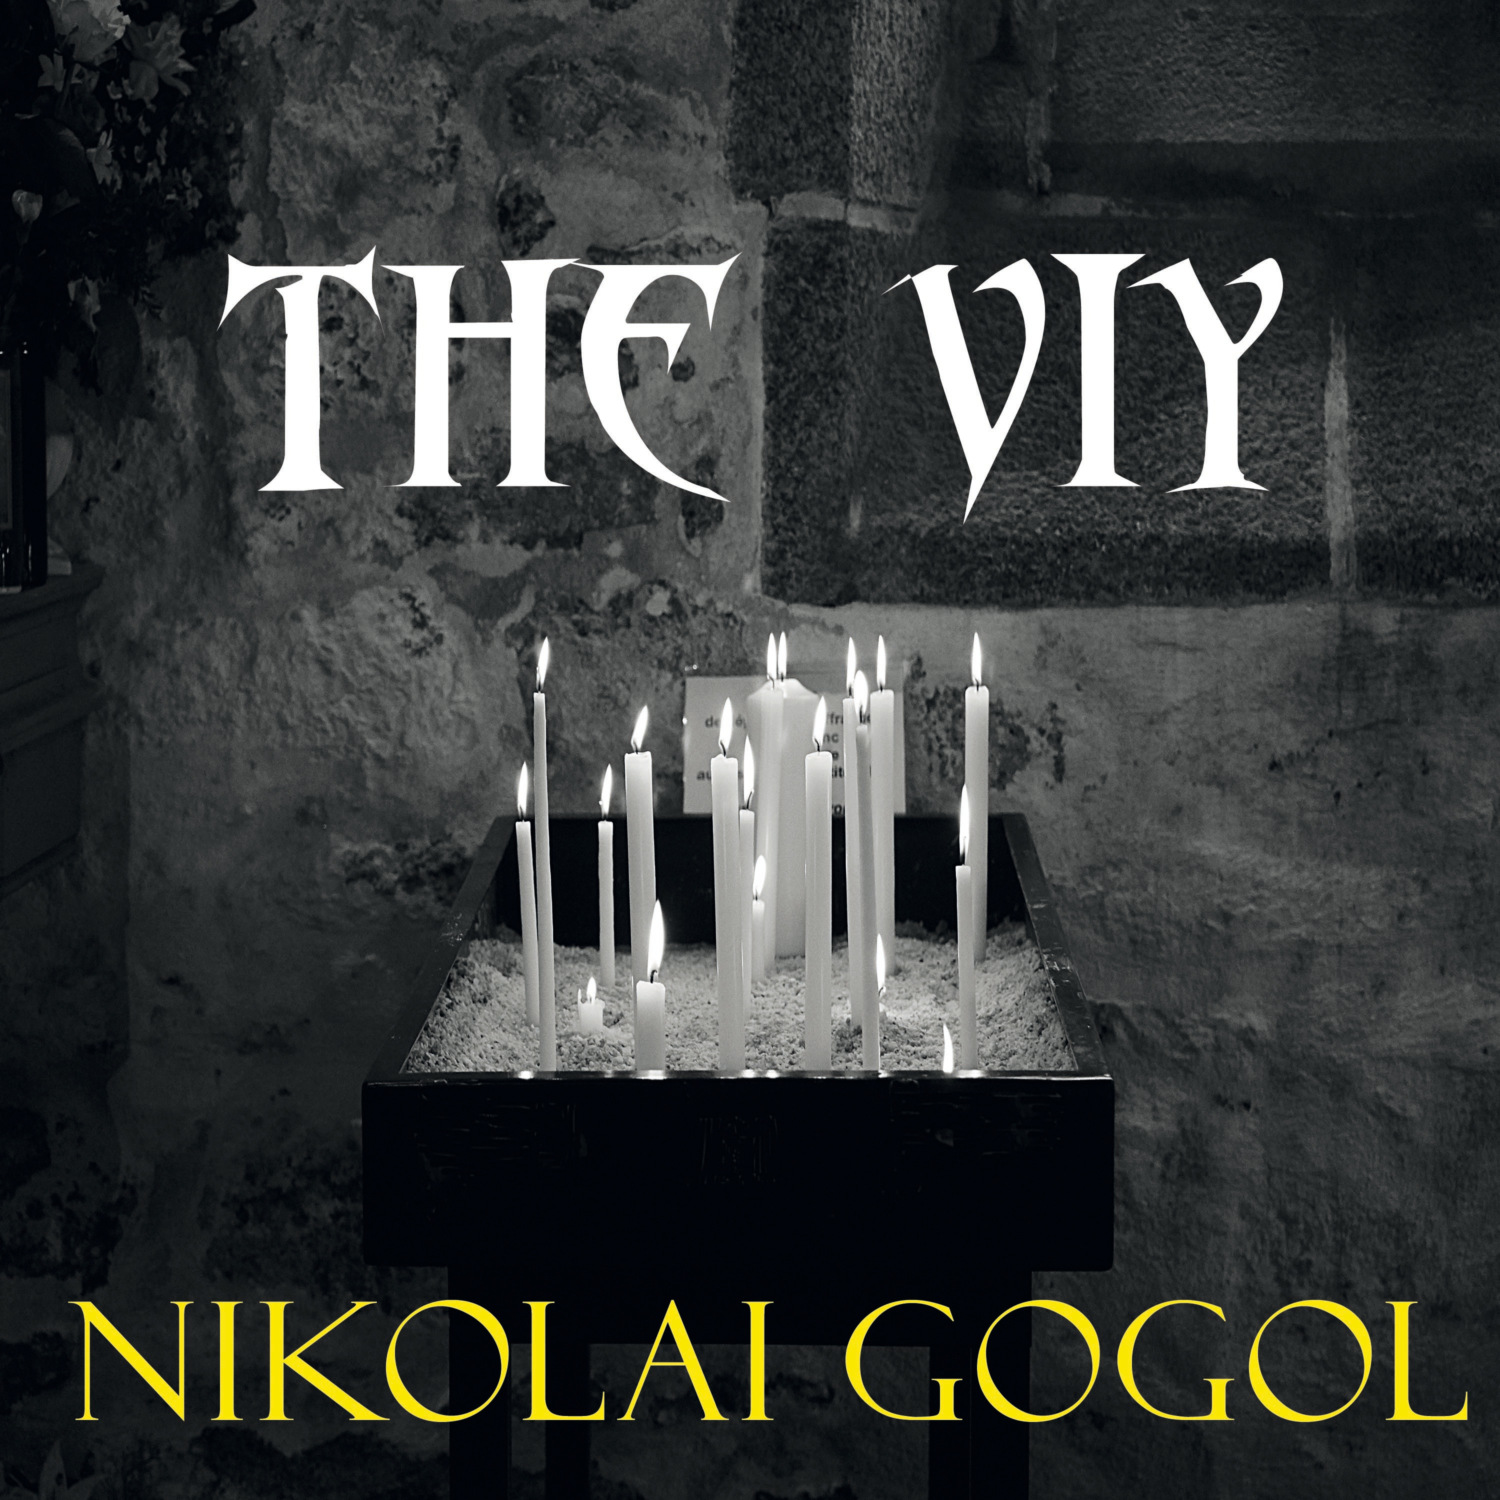 Viy by Gogol